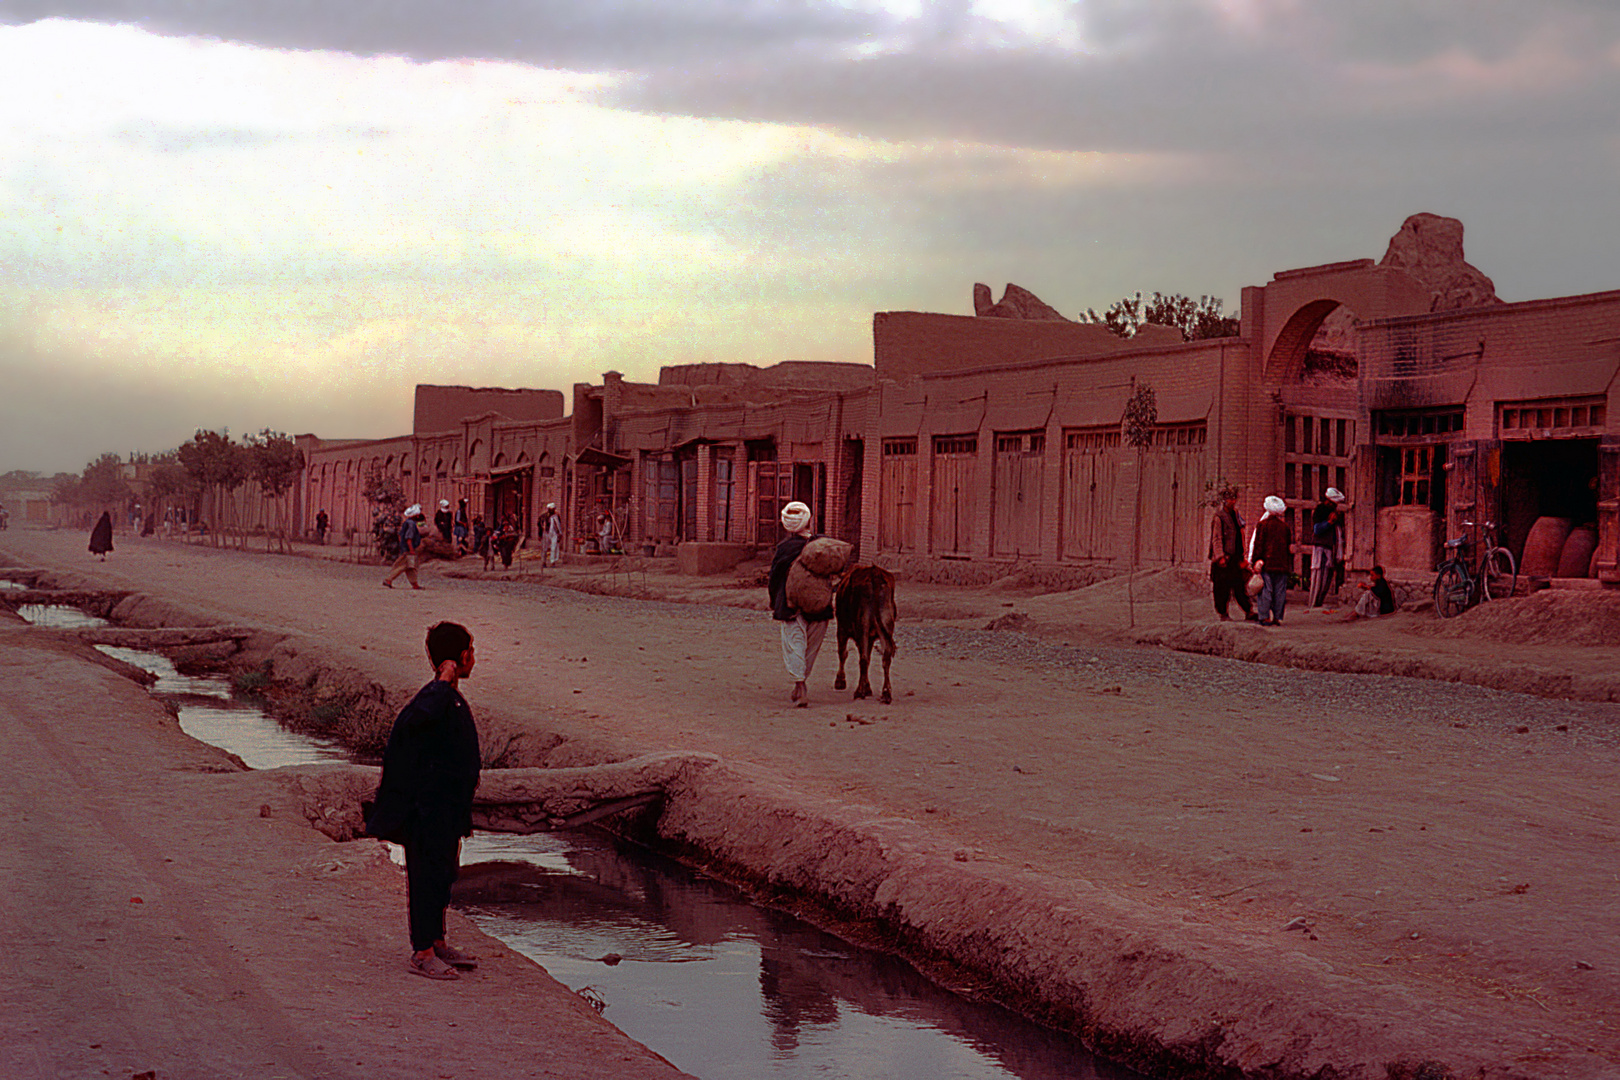 Scene during sunset in Herat